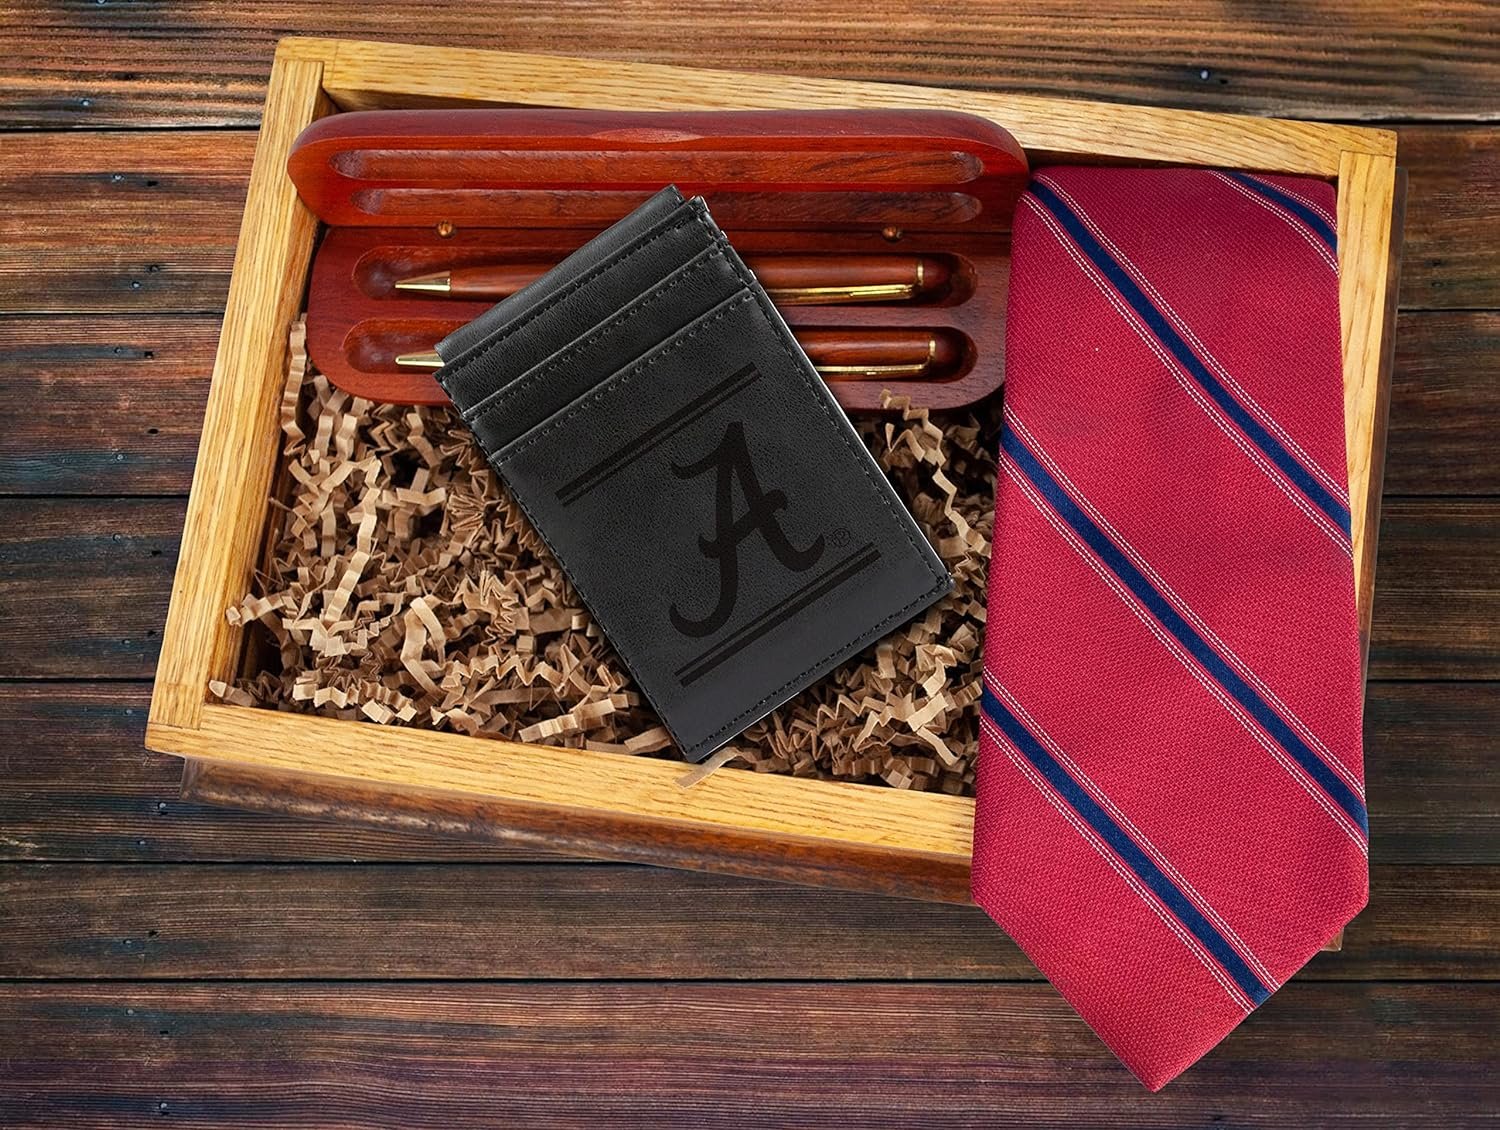 University of Alabama Crimson Tide Premium Black Leather Wallet, Front Pocket Magnetic Money Clip, Laser Engraved, Vegan